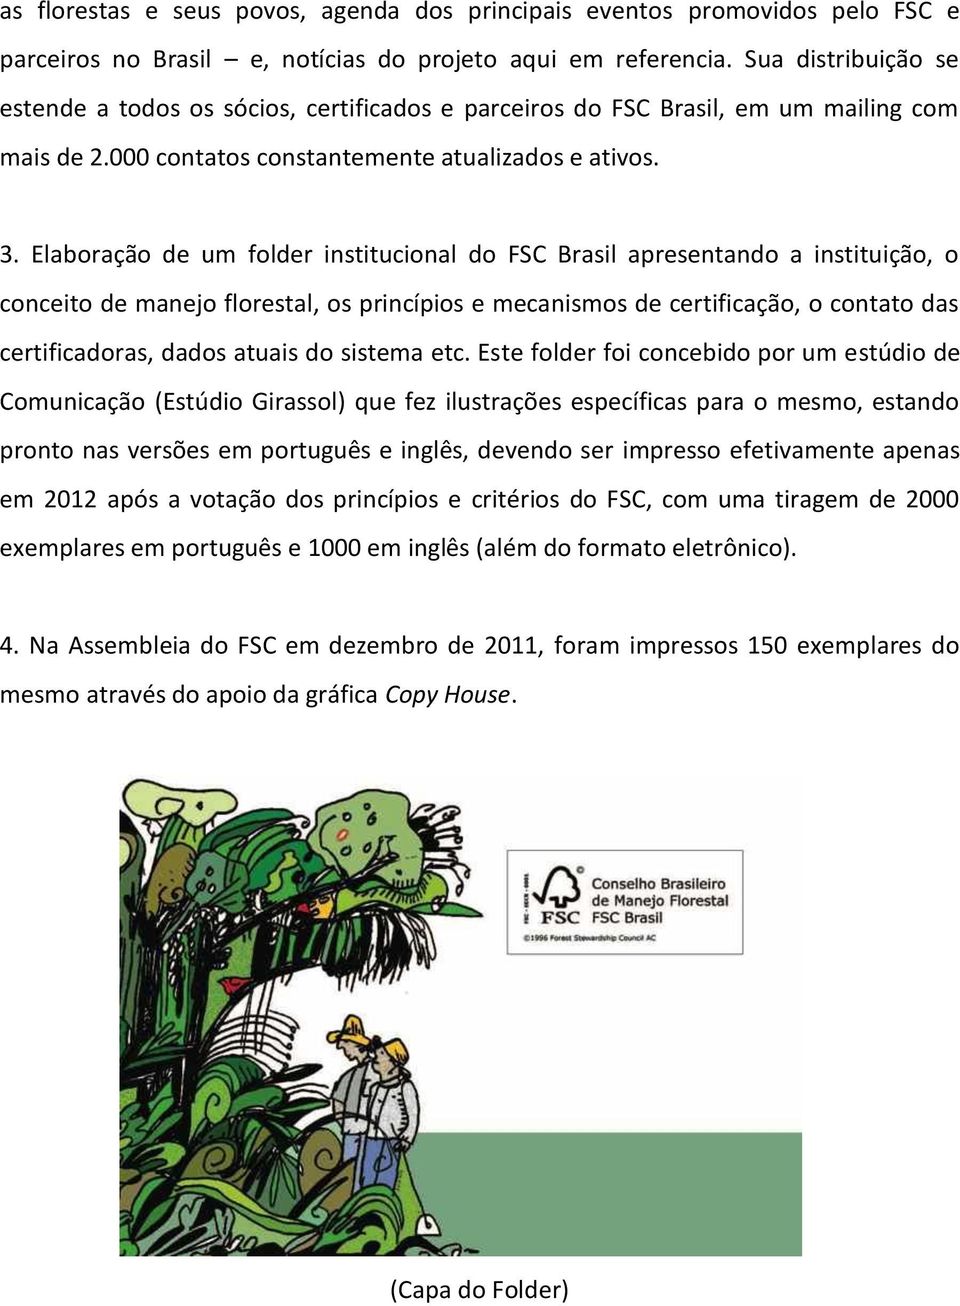 Elaboração de um folder institucional do FSC Brasil apresentando a instituição, o conceito de manejo florestal, os princípios e mecanismos de certificação, o contato das certificadoras, dados atuais